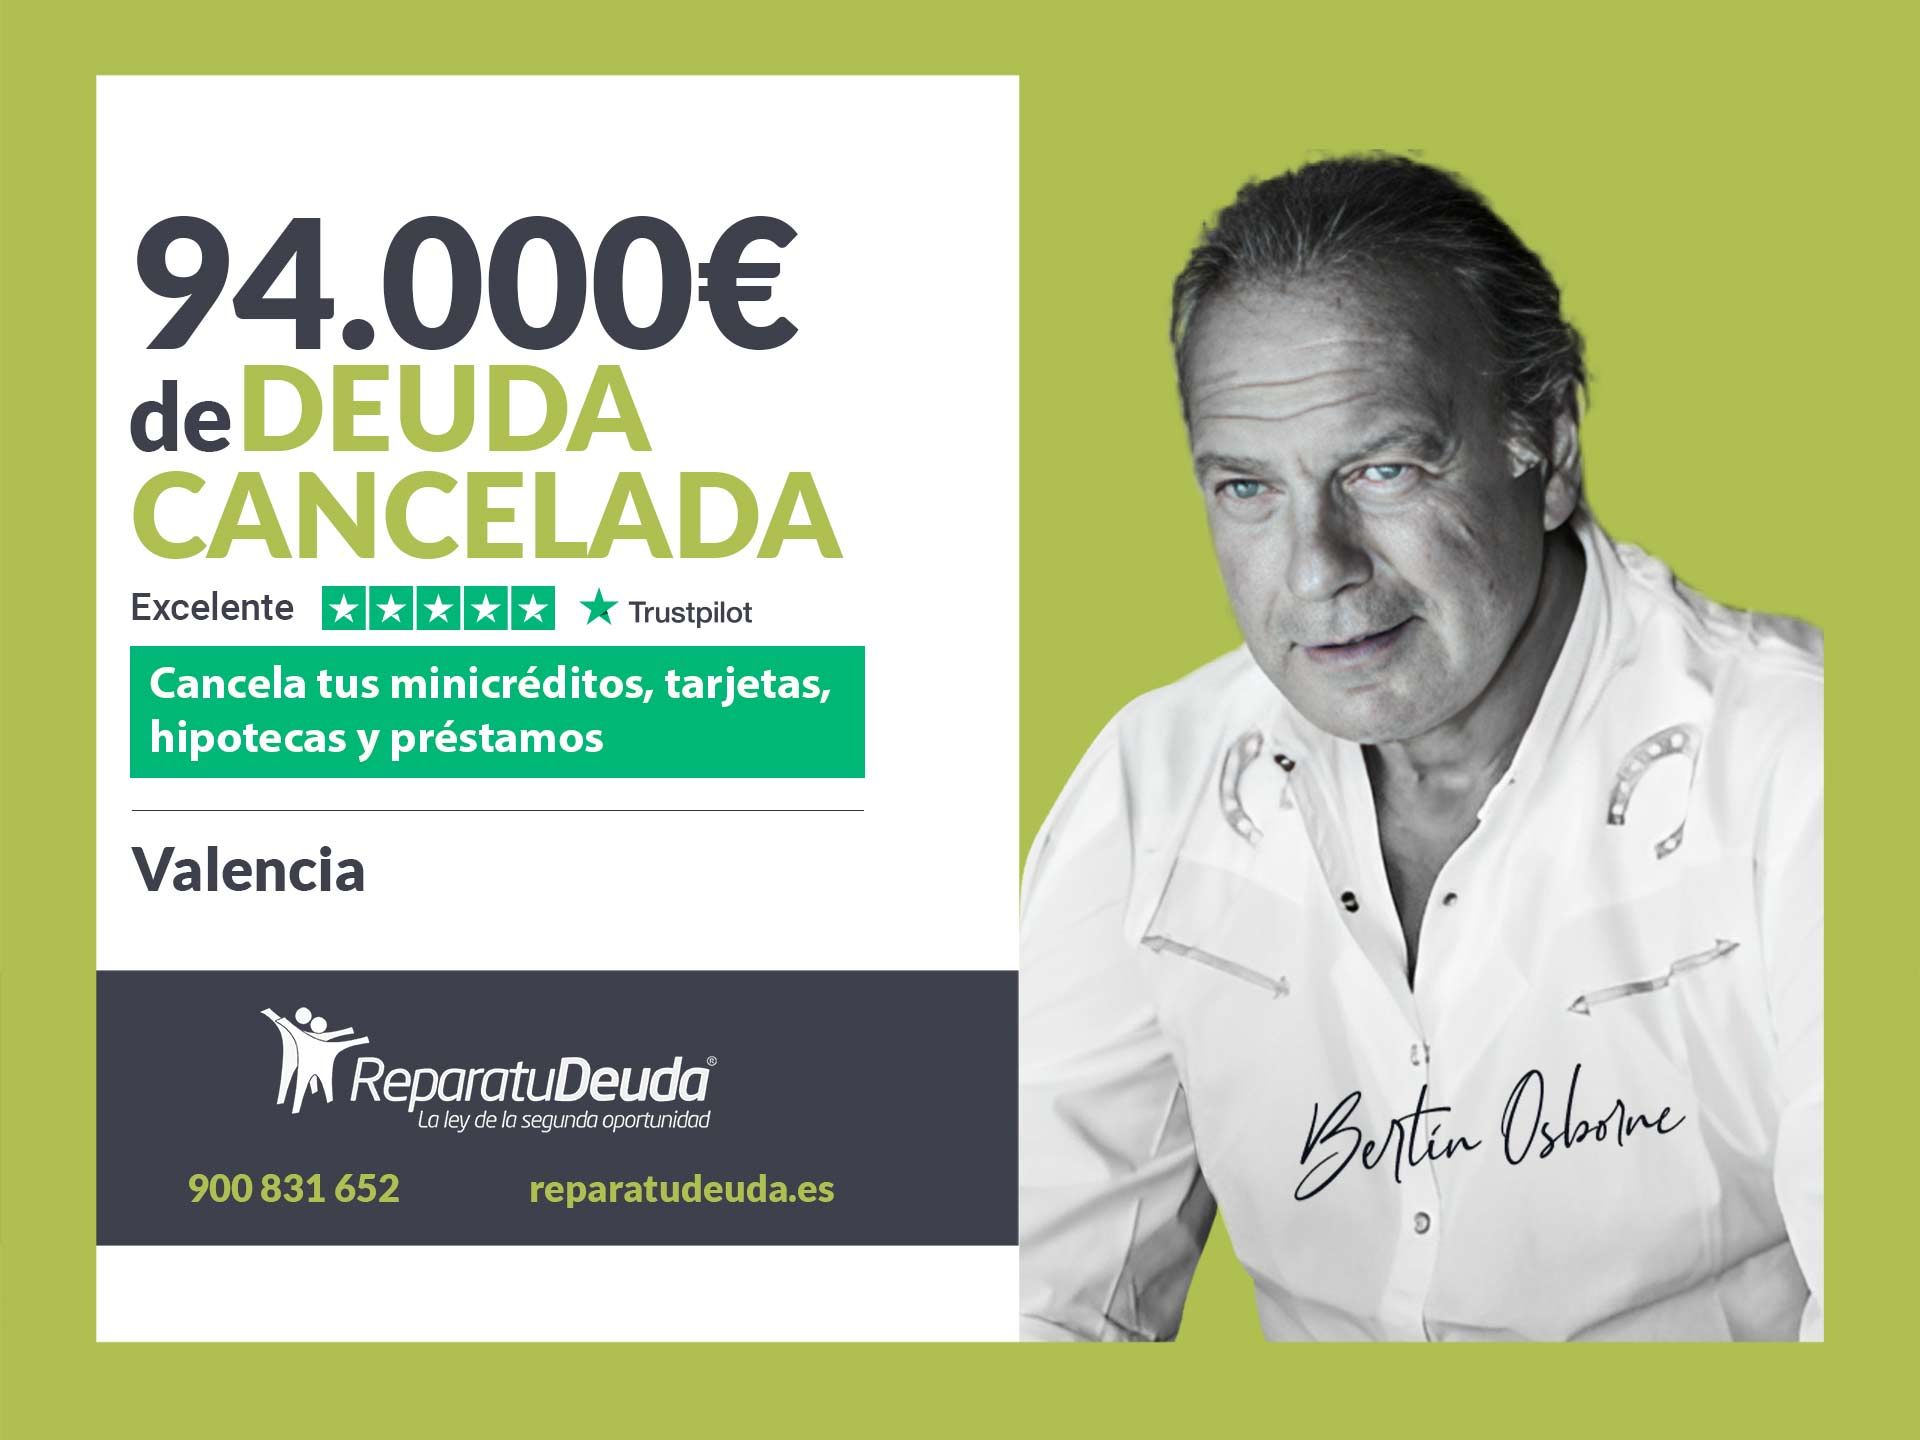 Repara tu Deuda Abogados cancela 94.000? en Valencia con la Ley de Segunda Oportunidad